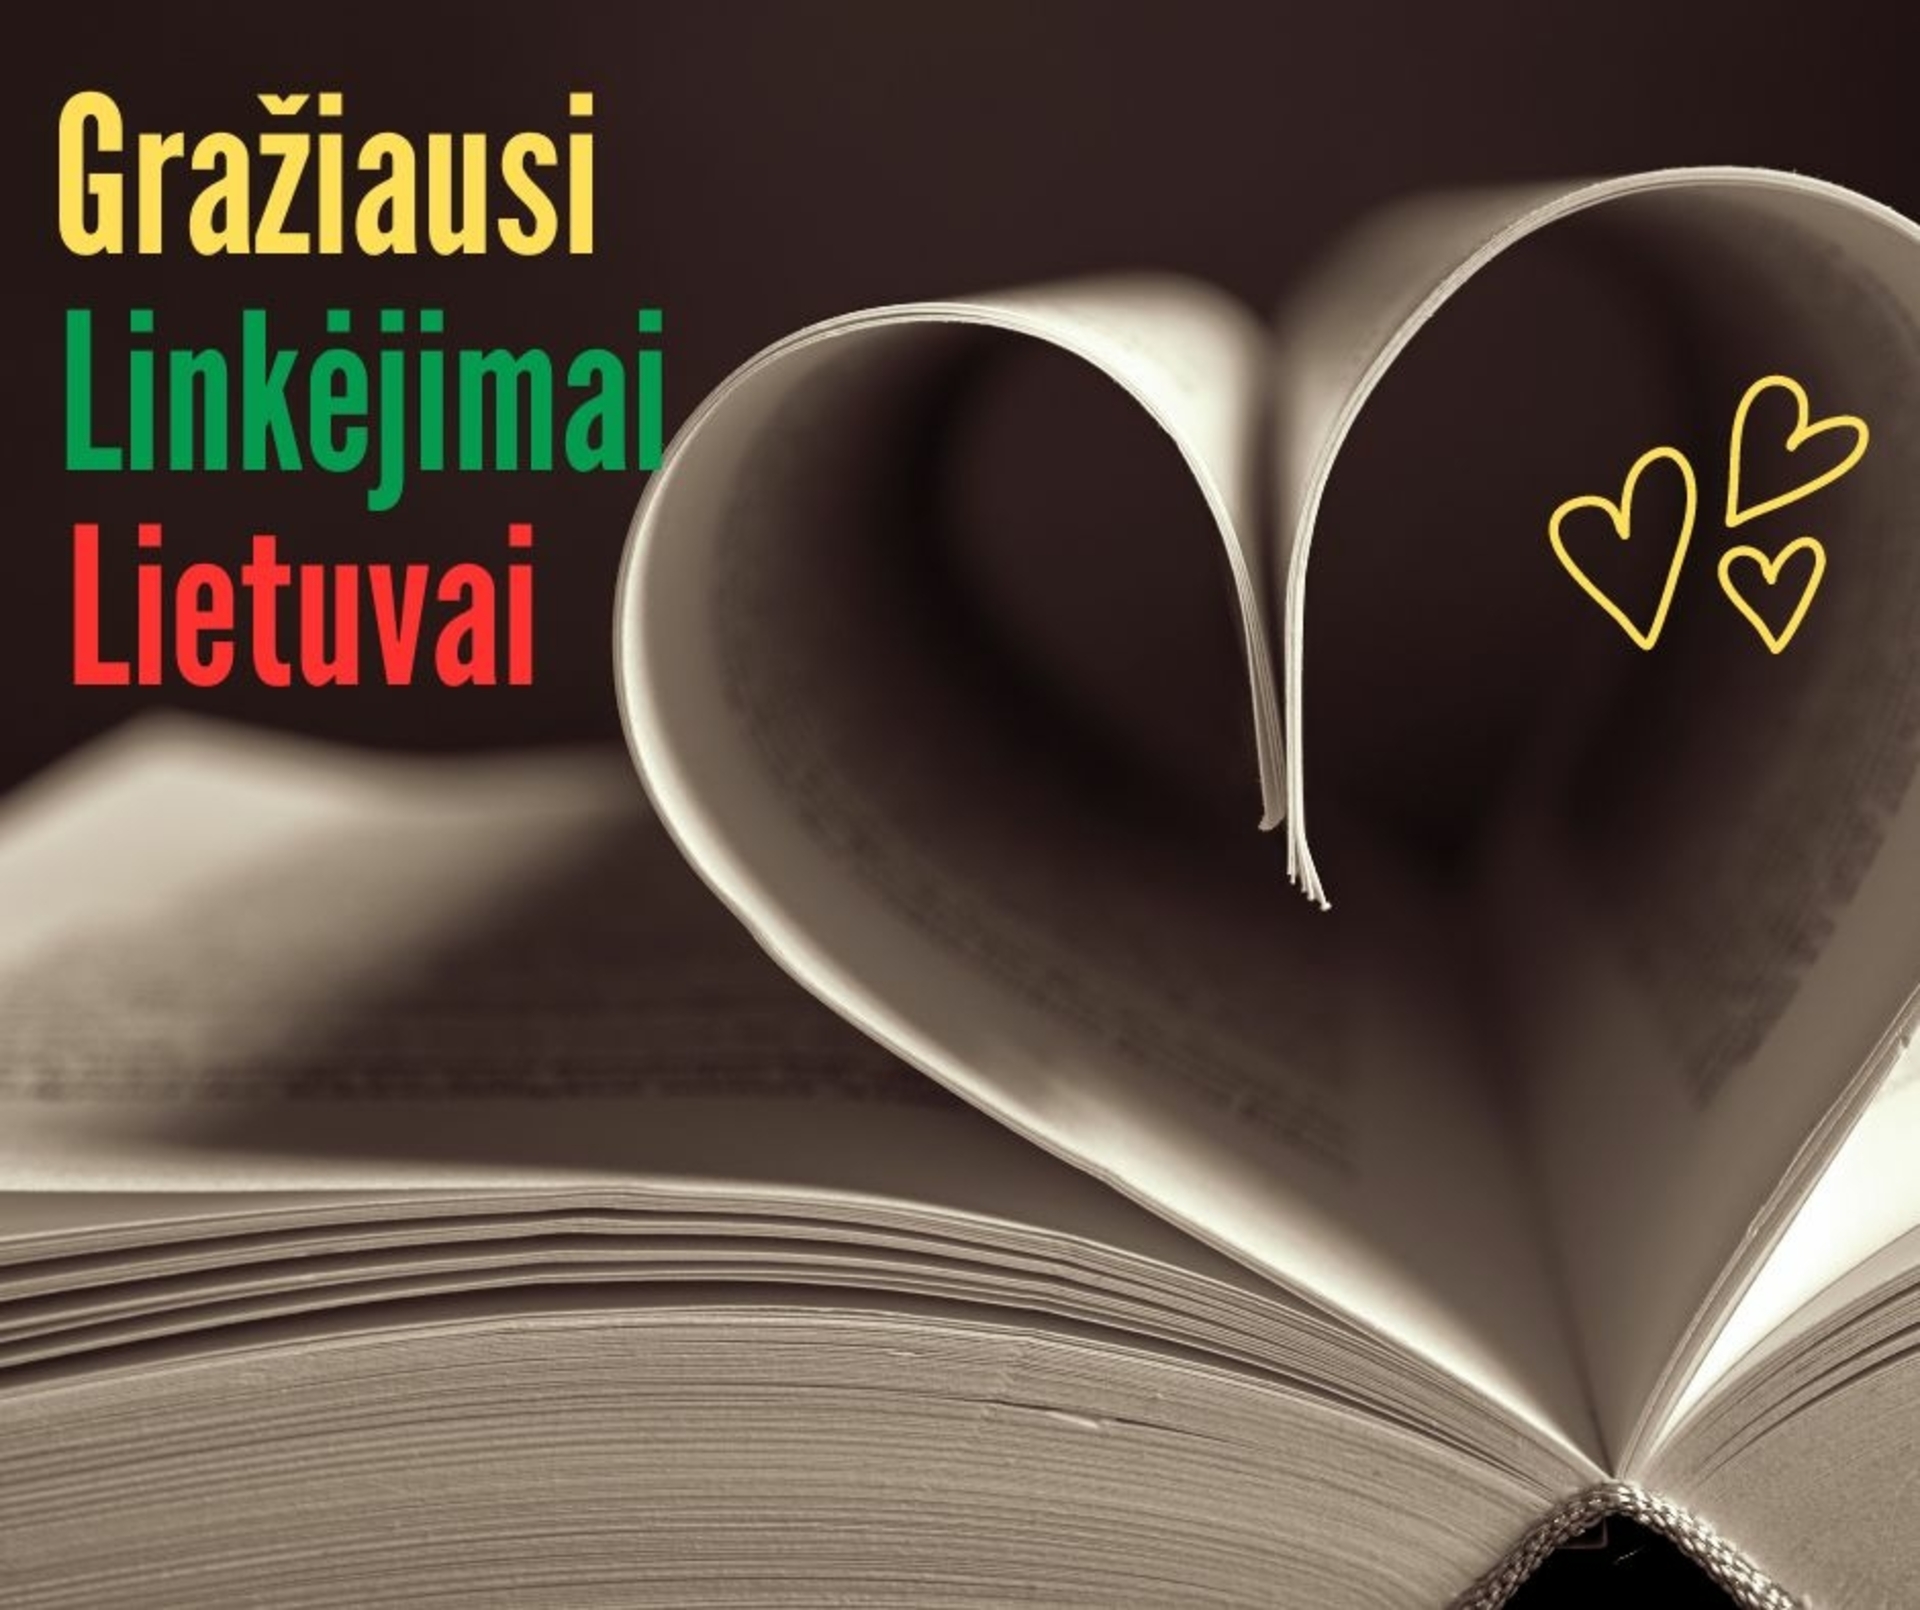 Iniciatyva "Gražiausi linkėjimai Lietuvai", skirta kovo 11 d. - Lietuvos nepriklausomybės atkūrimo dienai